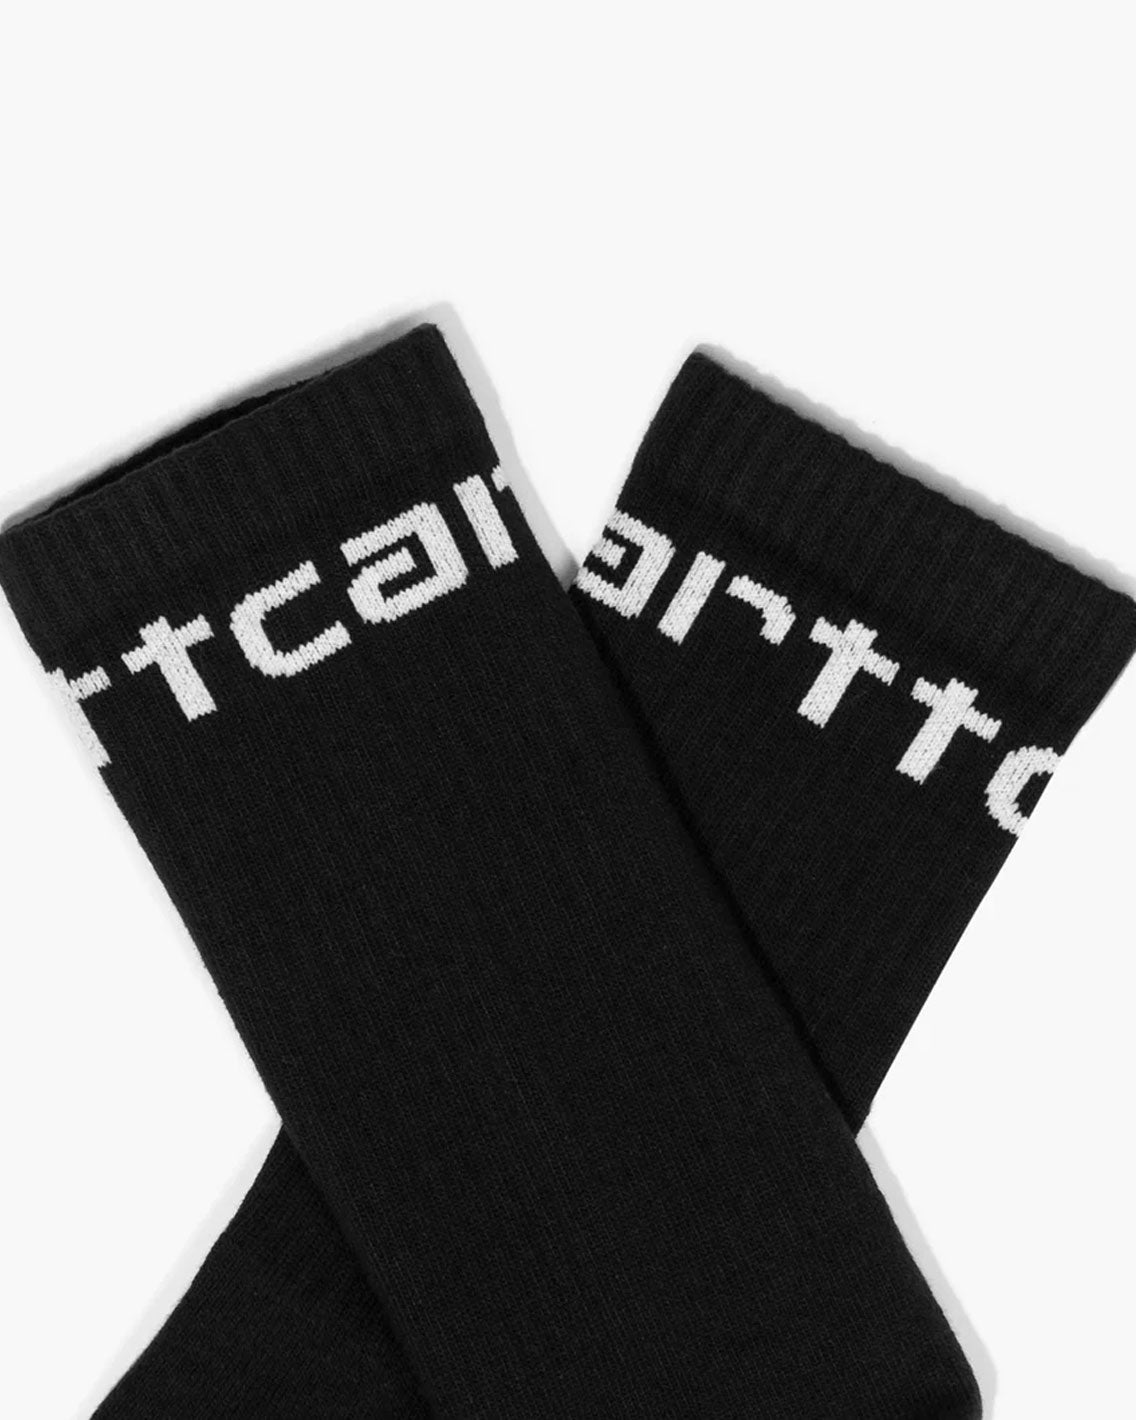 Carhartt - Carhartt Socks - Black  / White